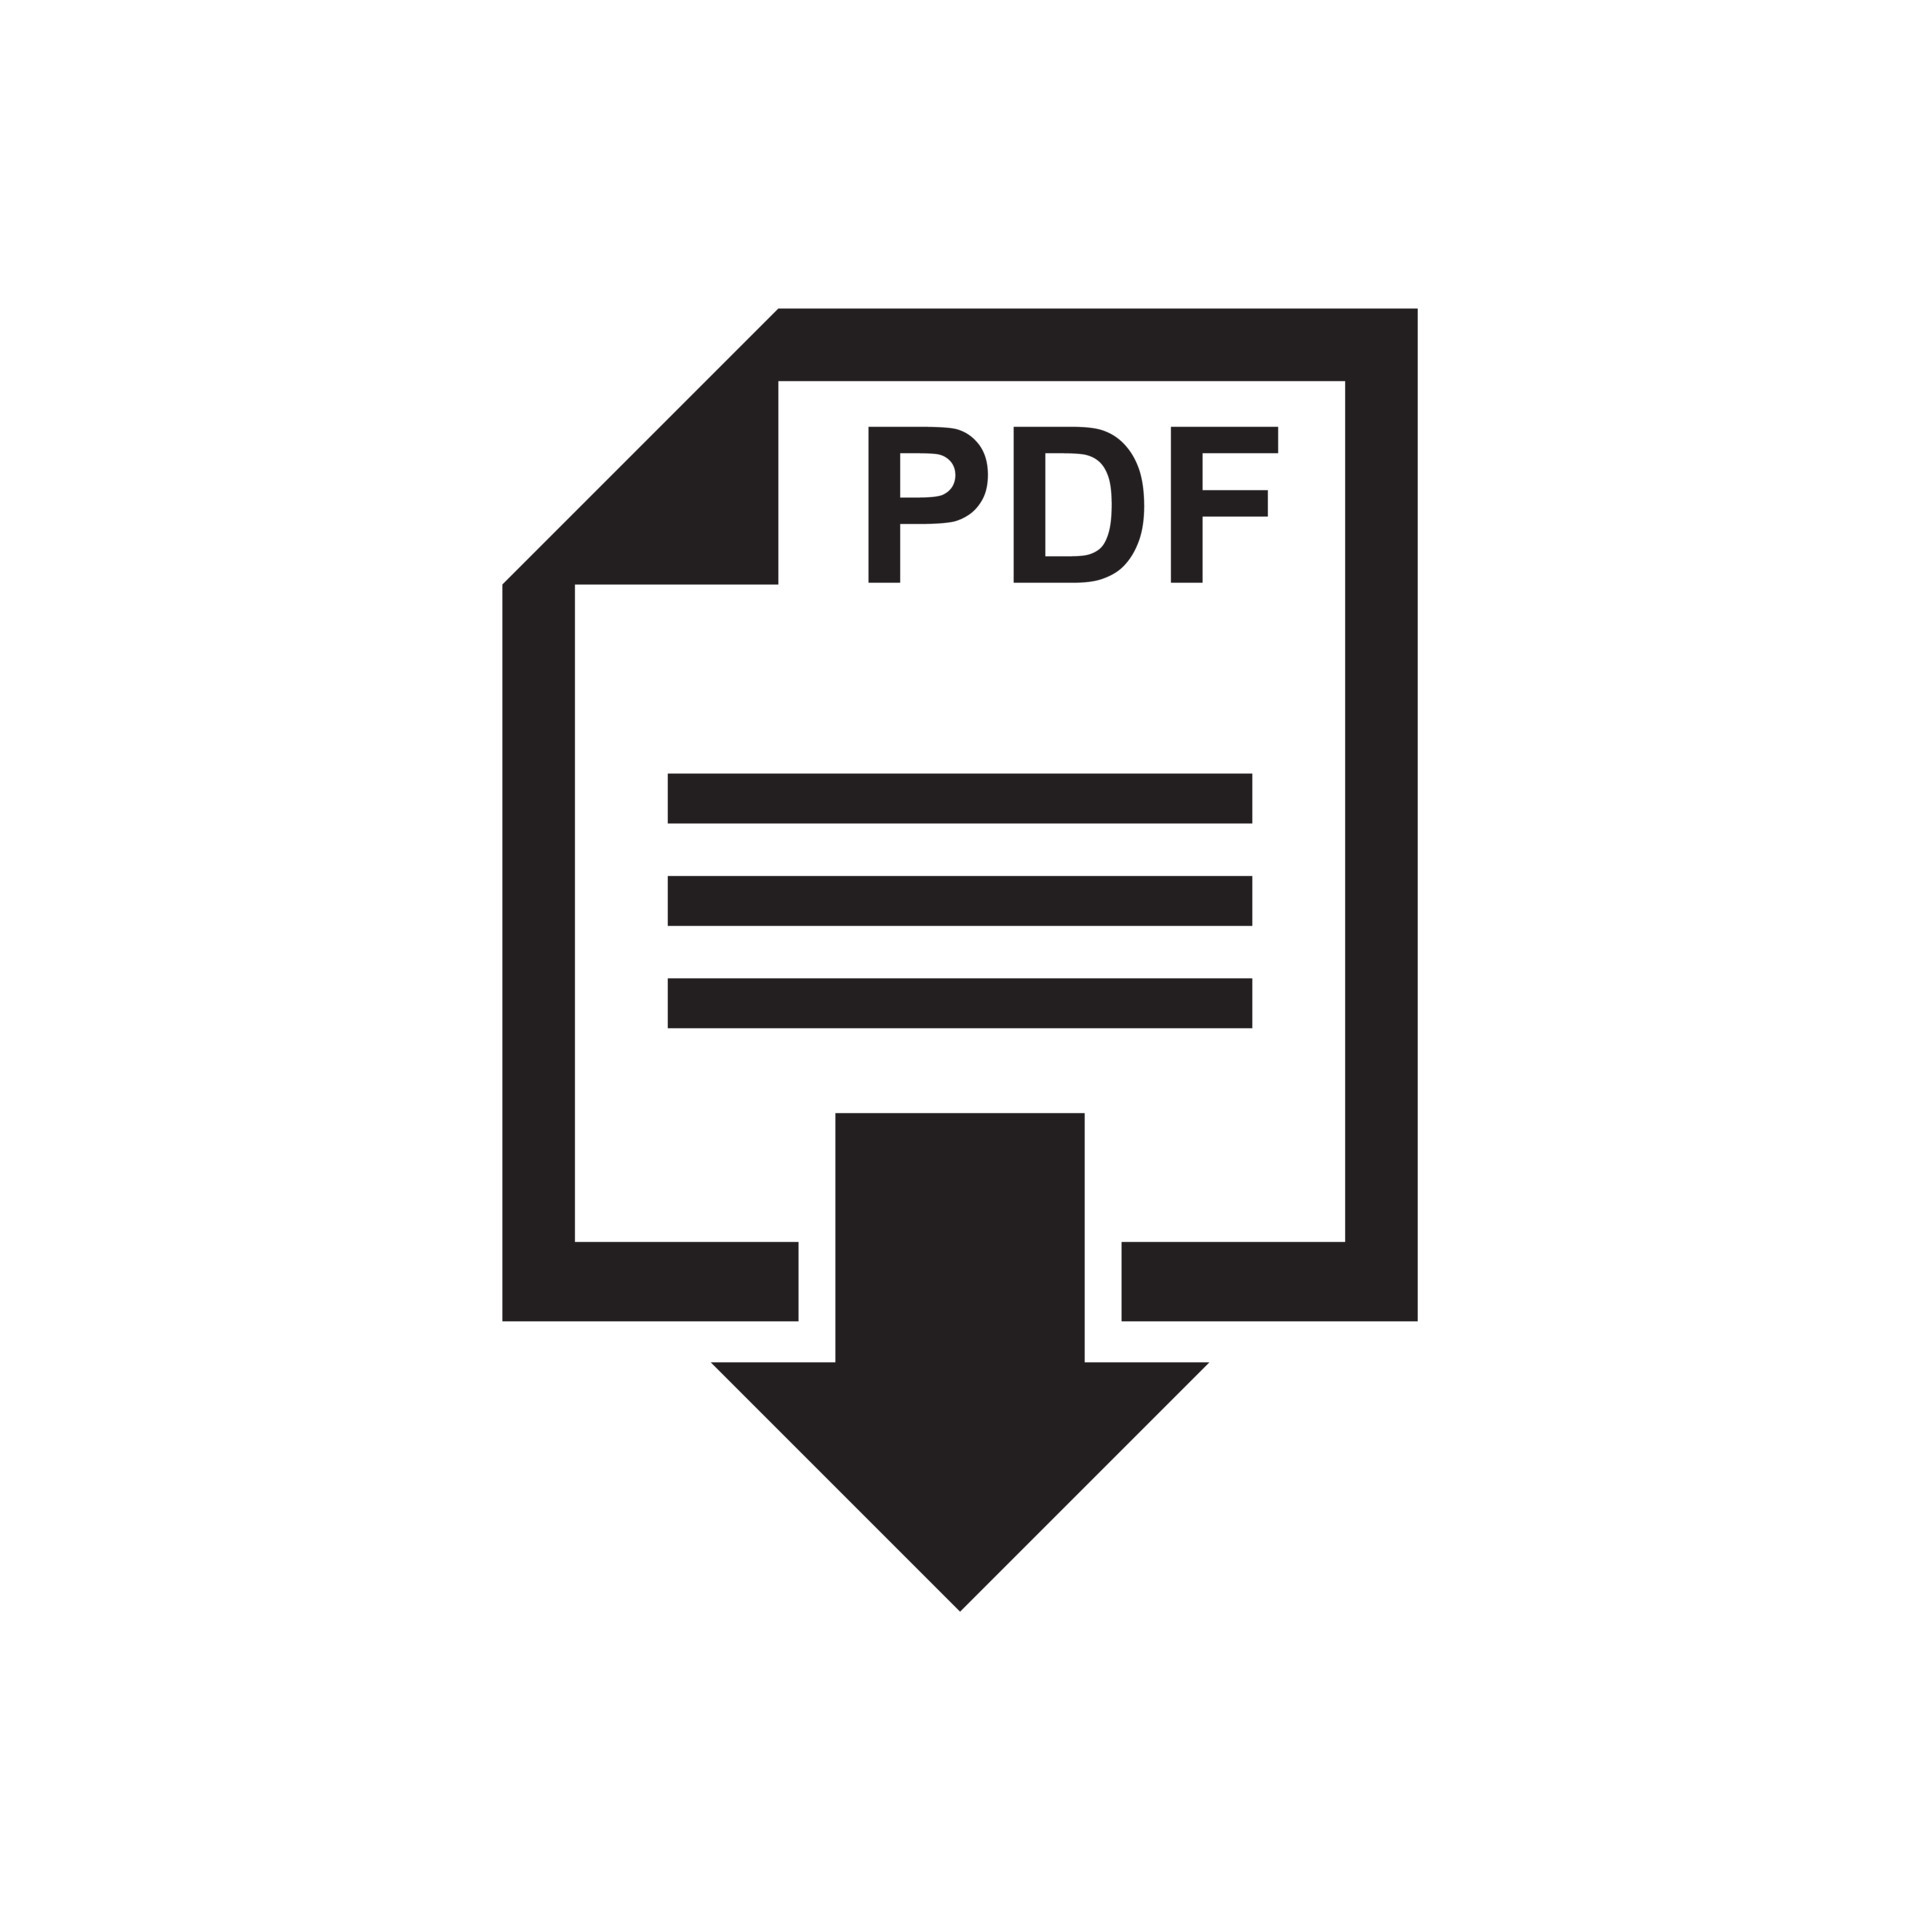 logo design pdf free download